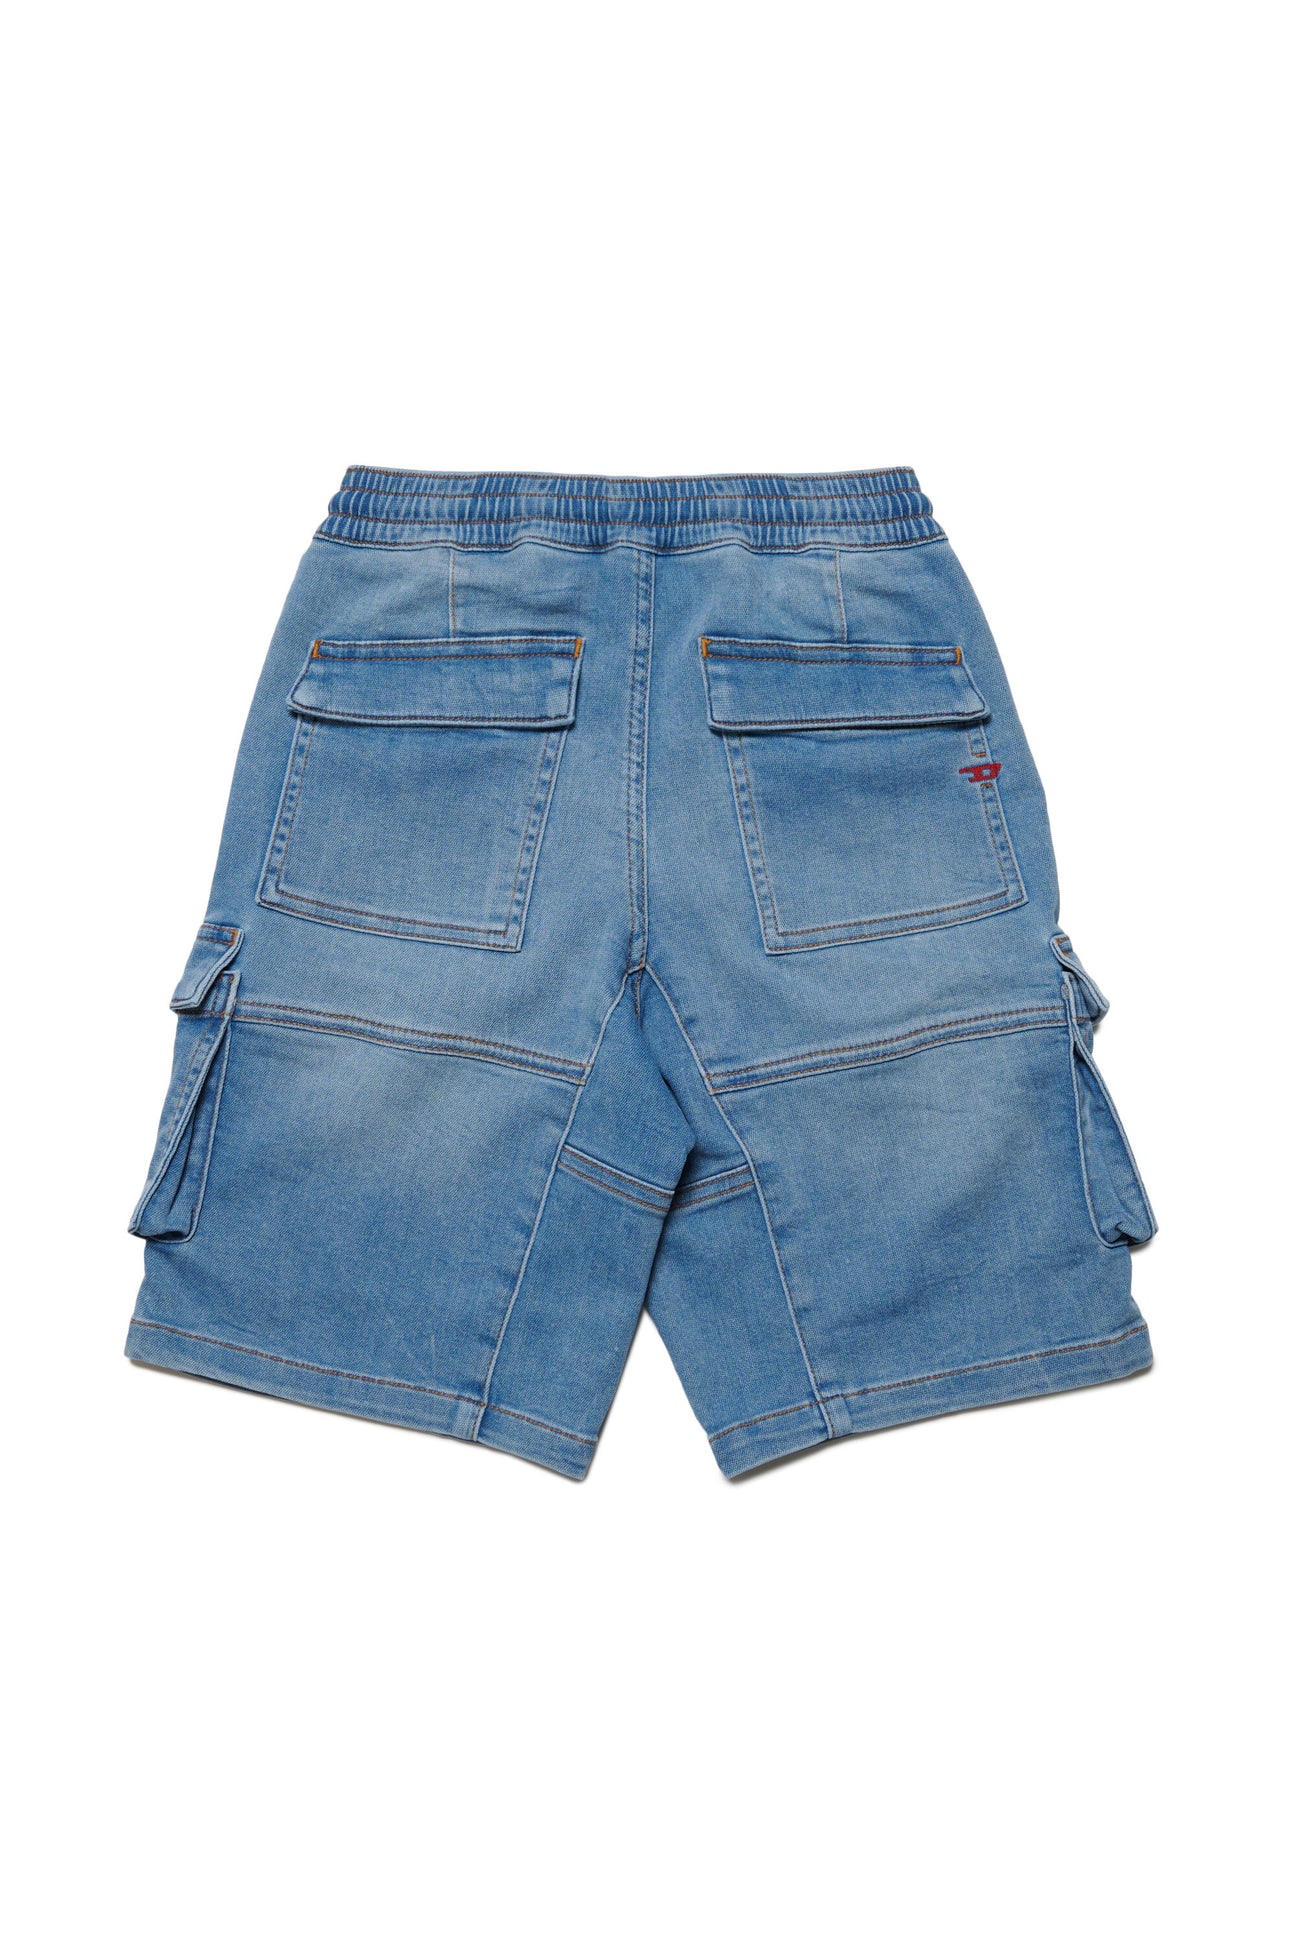 Cargo shorts in JoggJeans® Cargo shorts in JoggJeans®